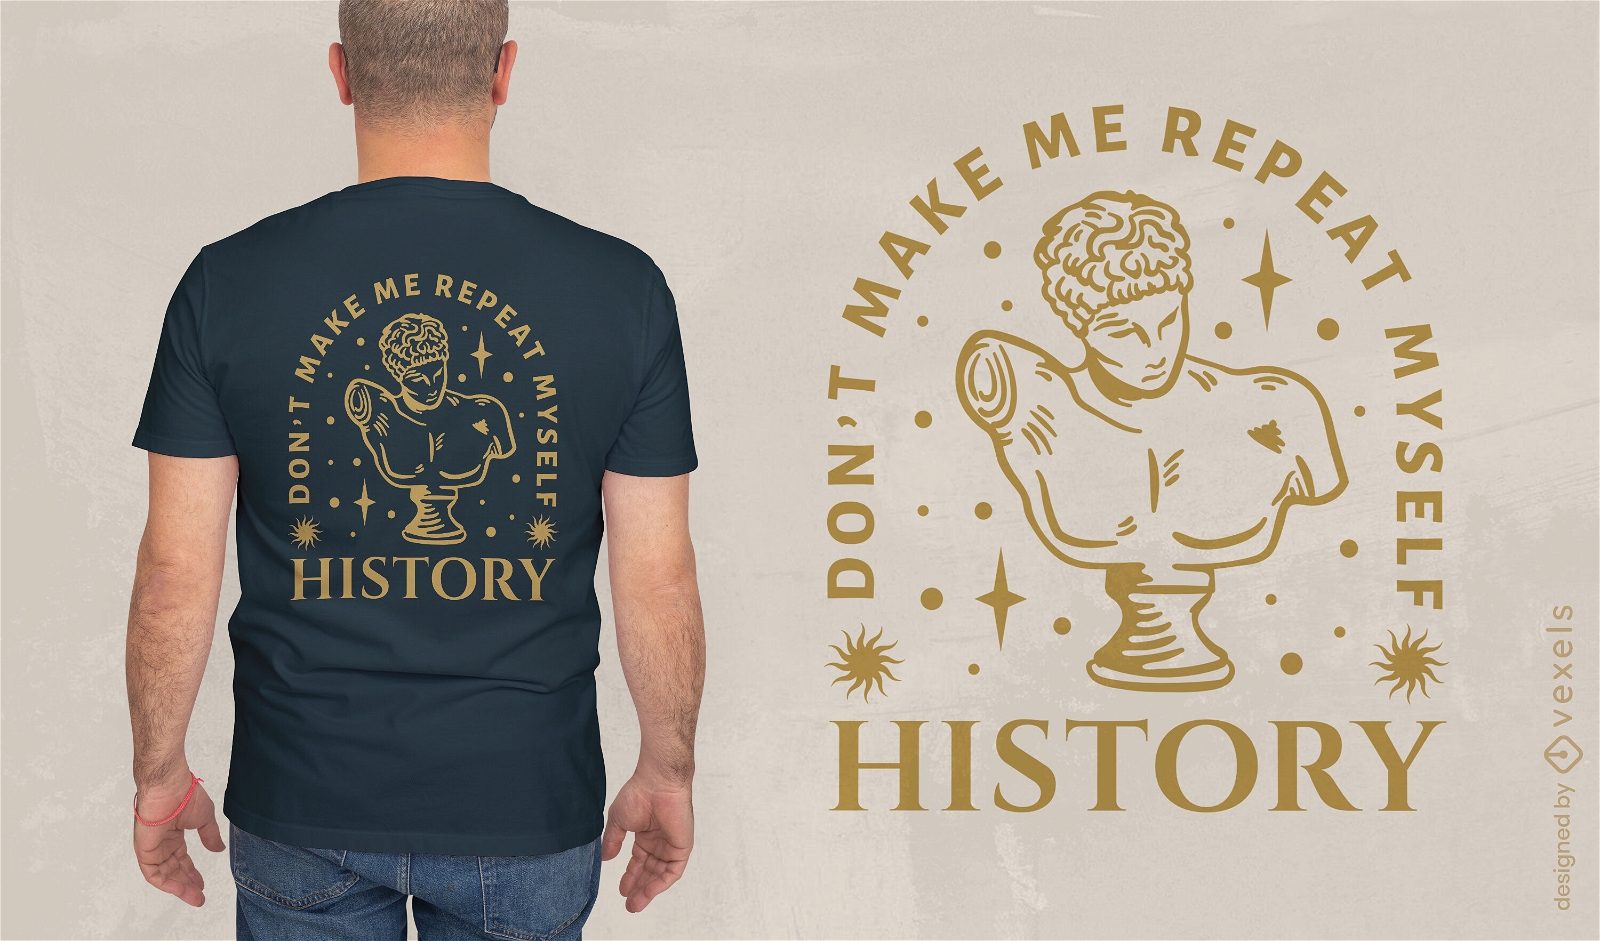 Dise?o de camiseta de amante de la historia.